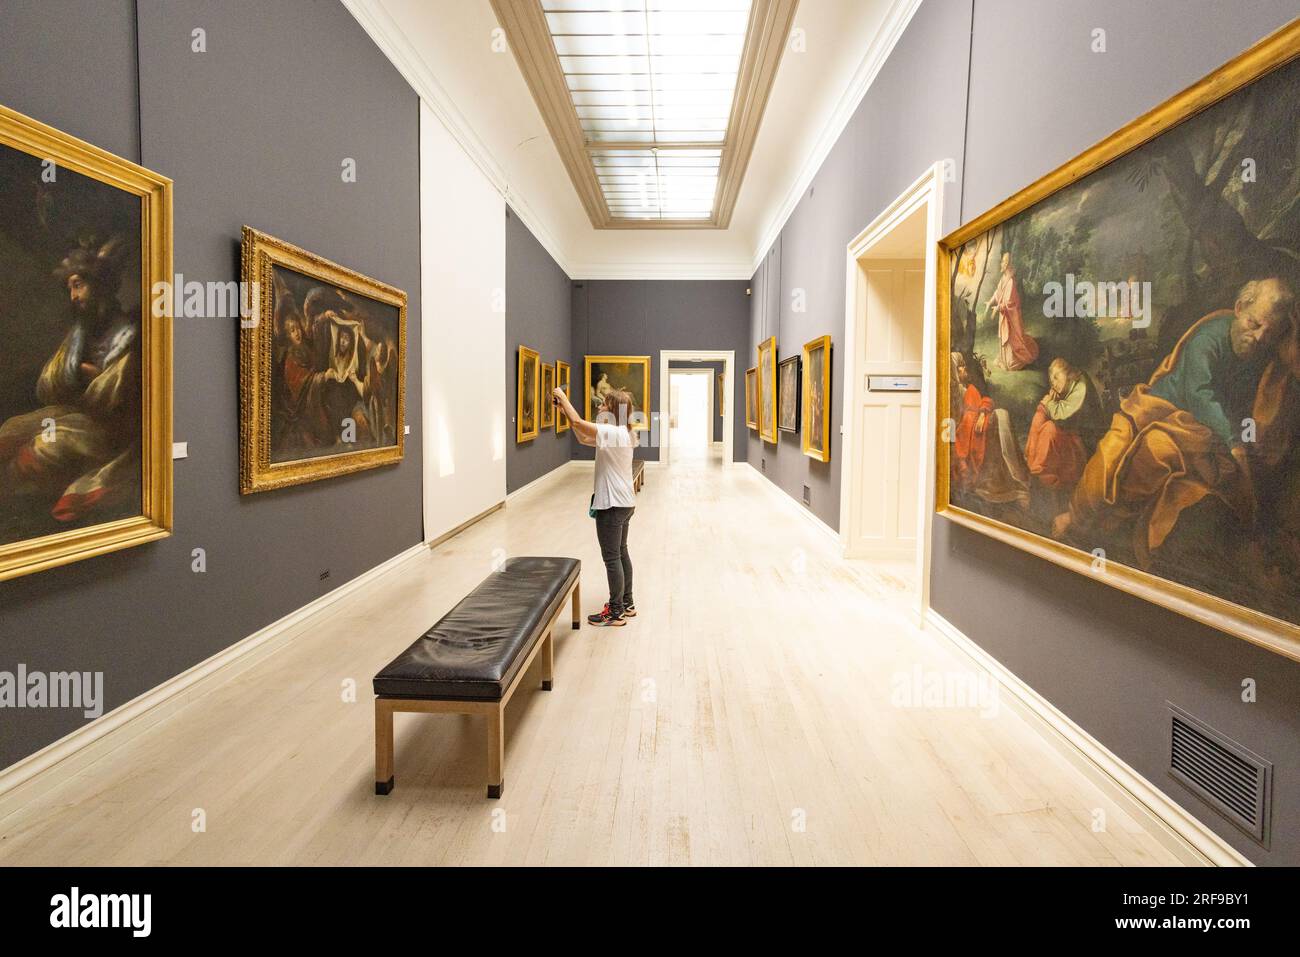 Un visiteur prenant une photo de peintures dans une galerie d'art ; à l'intérieur du musée des Beaux-Arts de Rouen - Musée des Beaux-Arts, Rouen France Europe Banque D'Images